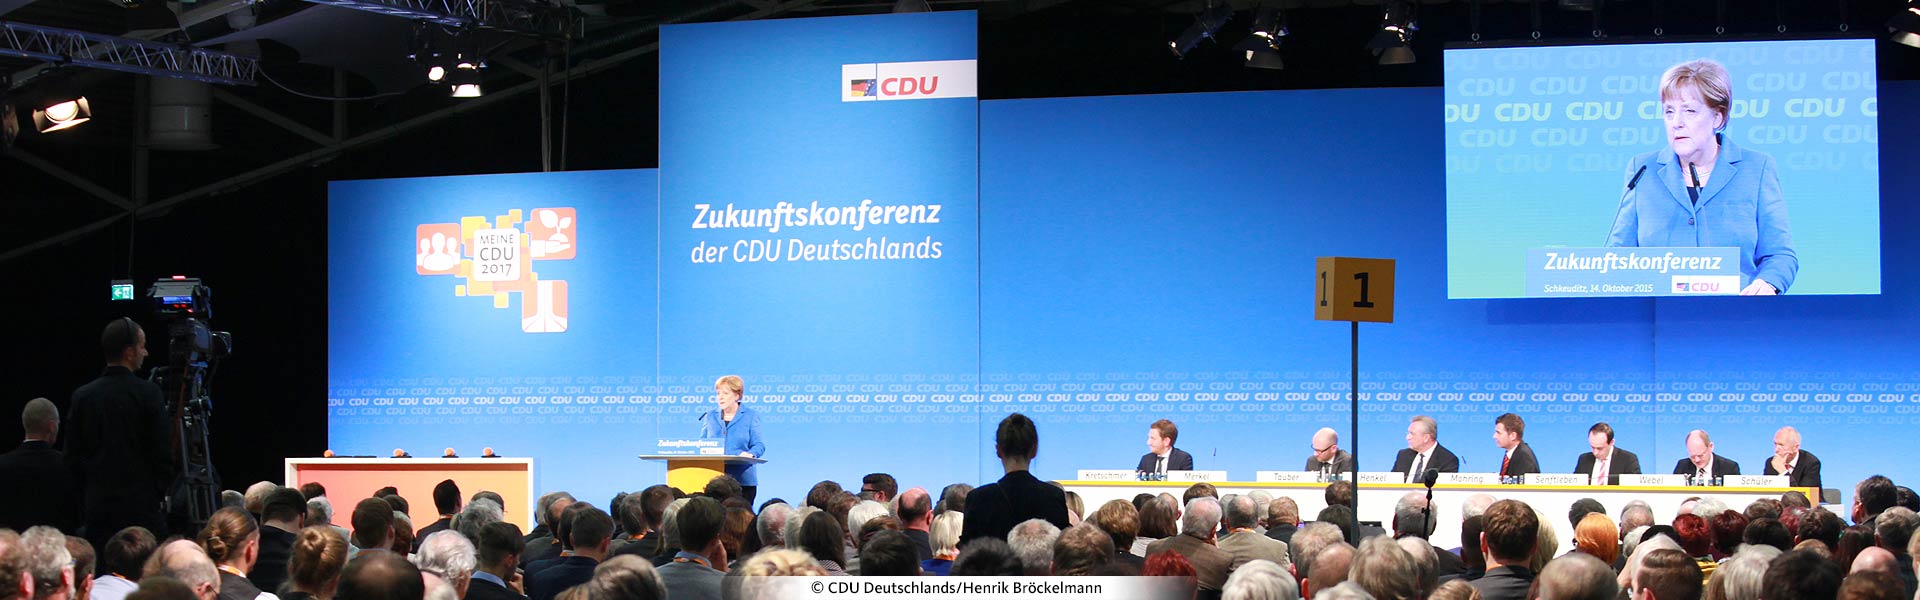 CDU Bundesparteitag 2015 Deutsche Einheit Festakt E-Werk Berlin Angela Merke Podium Zukunftskonferenz der CDU Deutschlands Gestaltung und Planung von Erlebnisräumen Veranstaltungsdesign